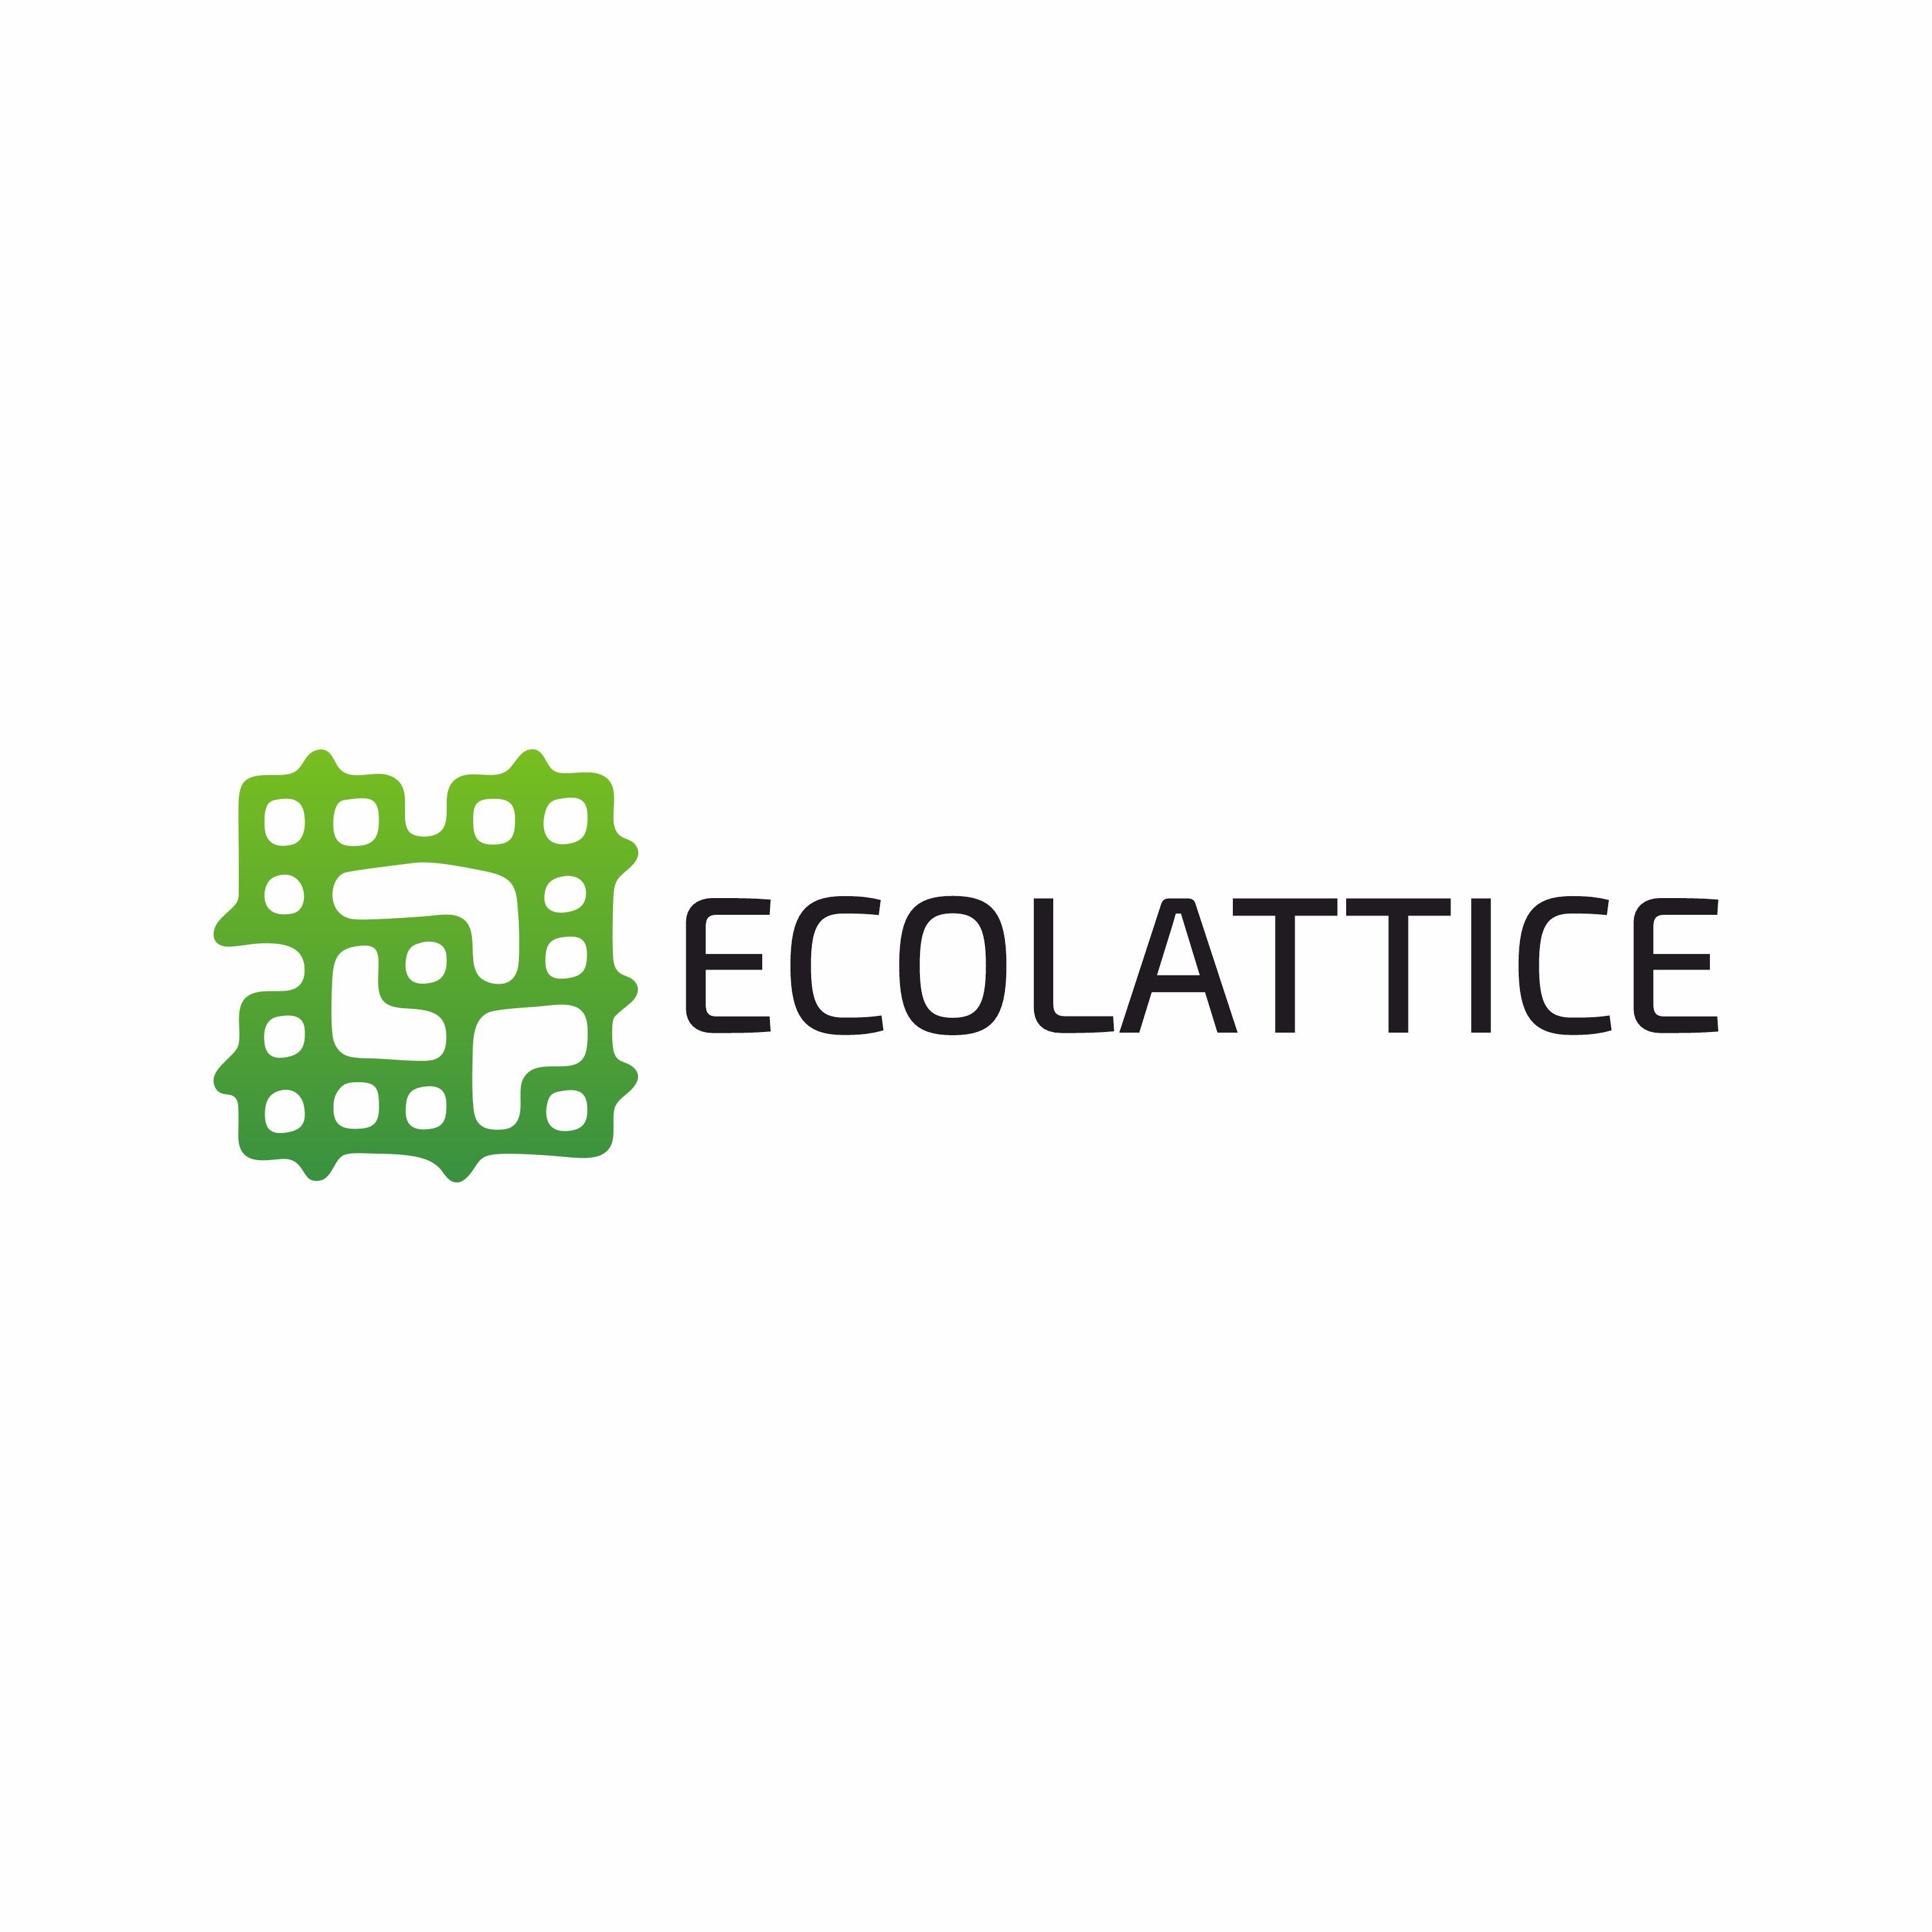 Ecolattice